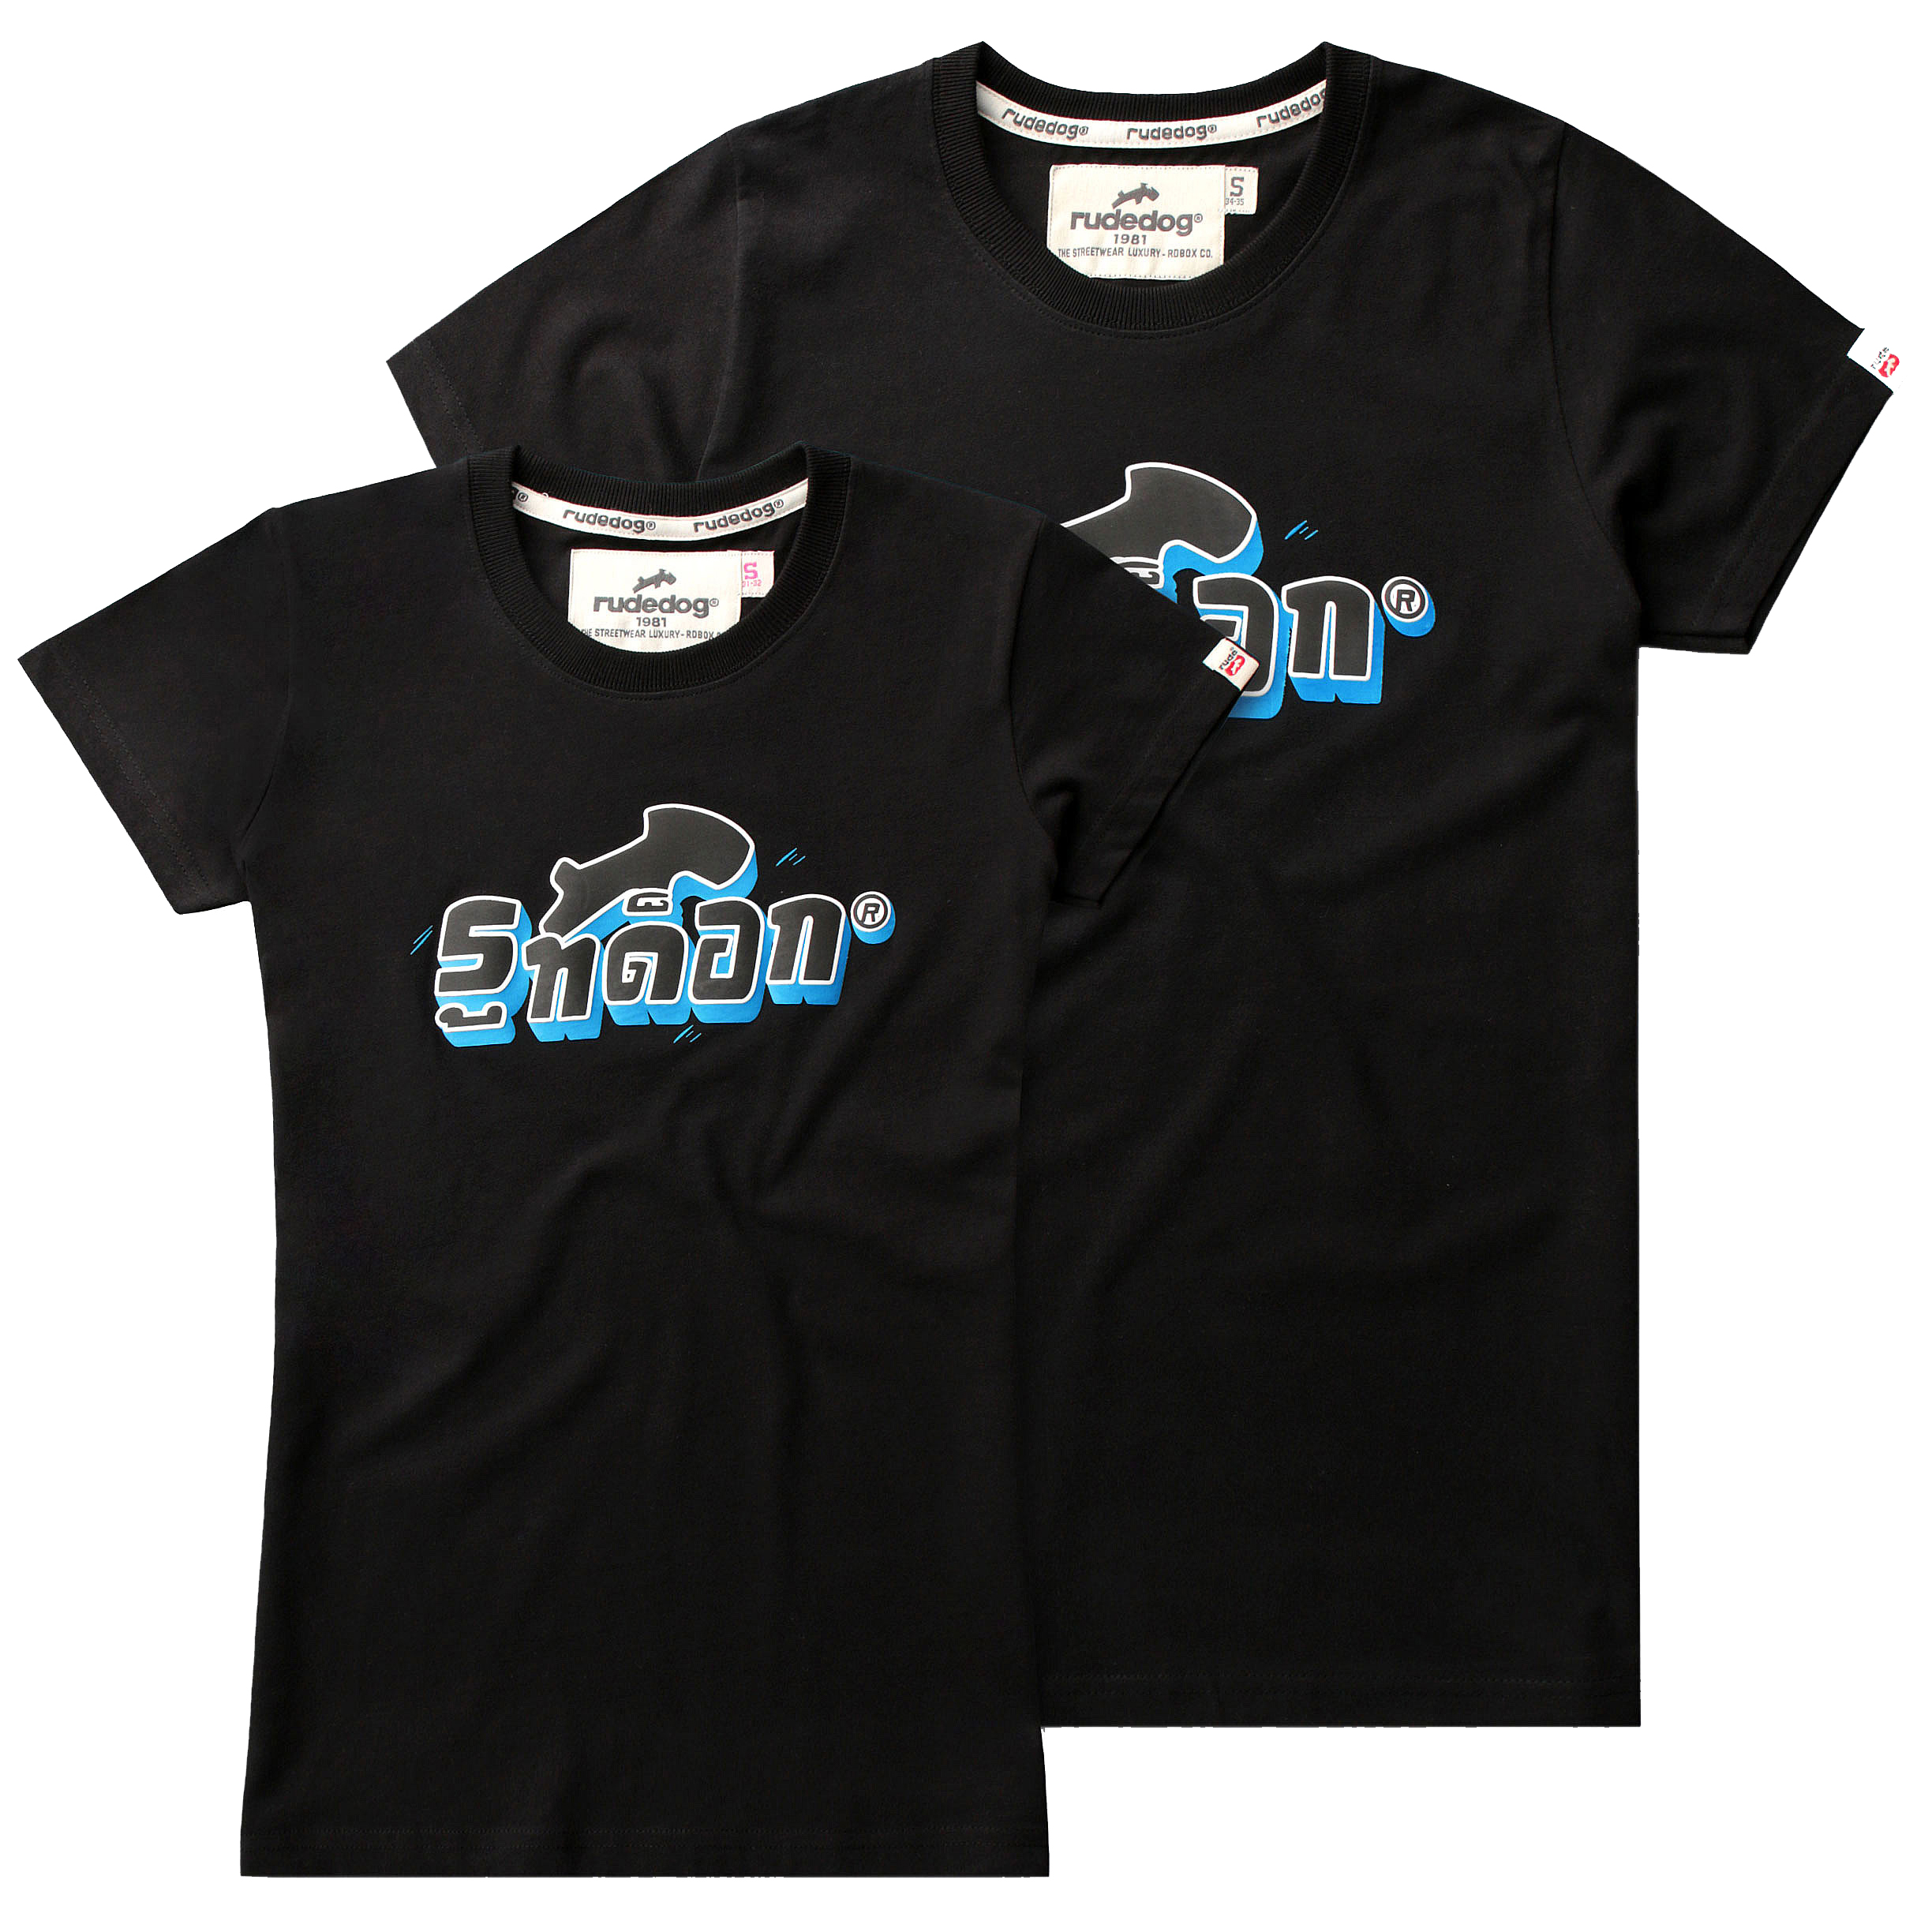 rudedog T-shirt เสื้อยืด รุ่น RD THAI (ผู้ชาย) แฟชั่น คอกลม ลายสกรีน ผ้าฝ้าย cotton ฟอกนุ่ม ไซส์ S M L XL